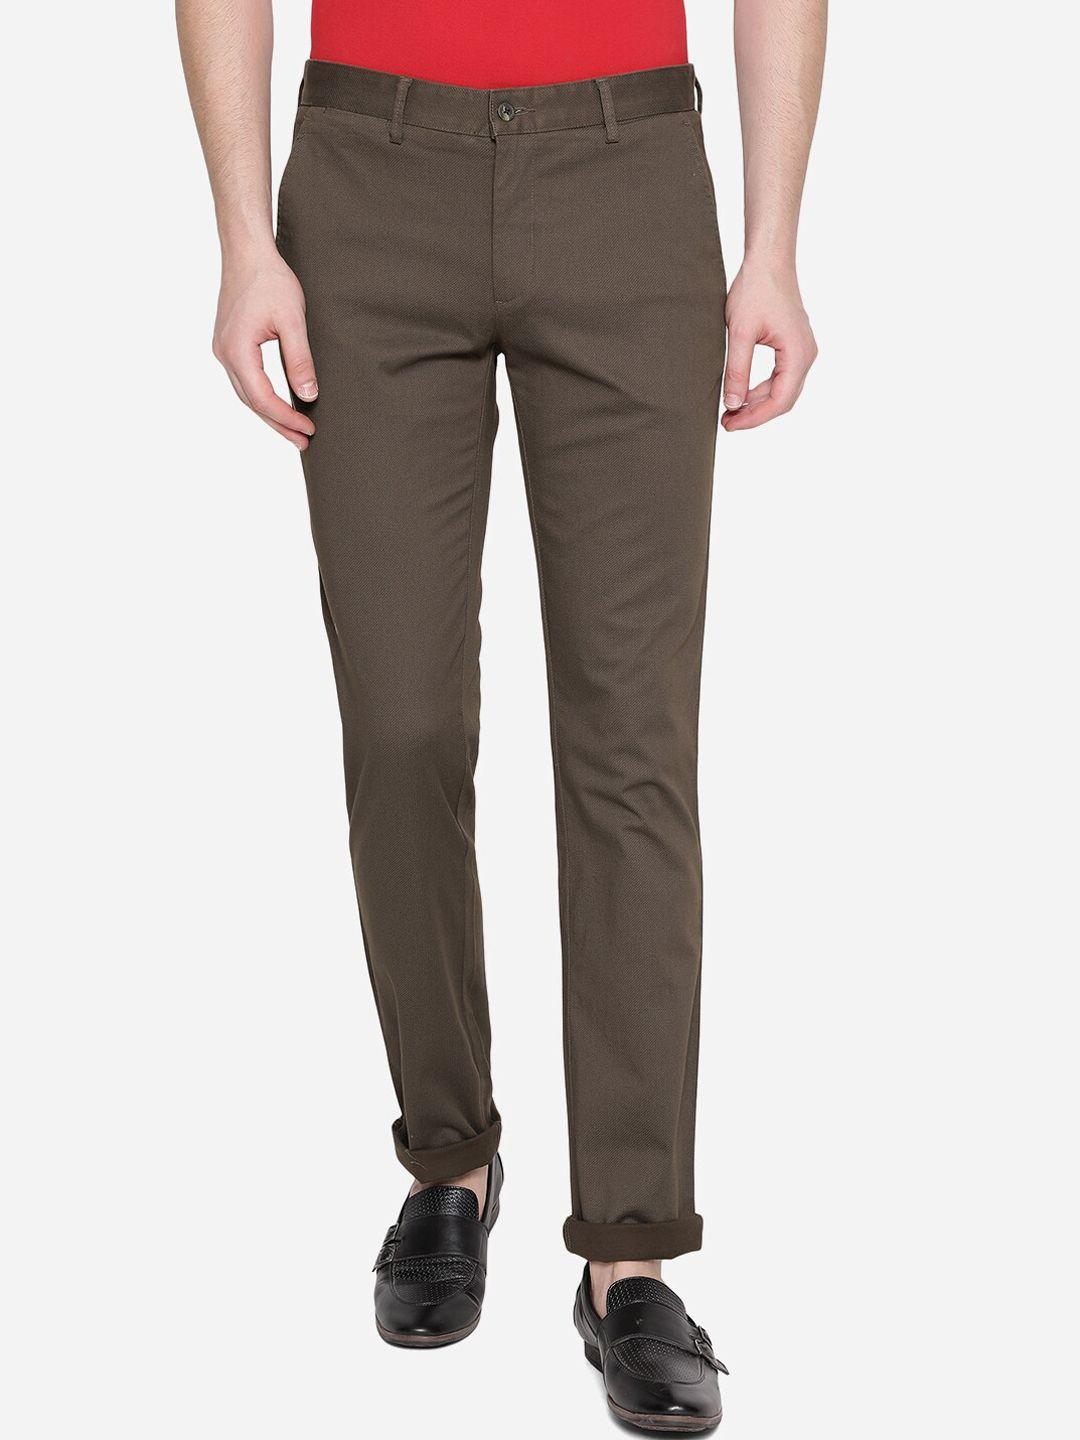 greenfibre-men-brown-skinny-fit-trousers